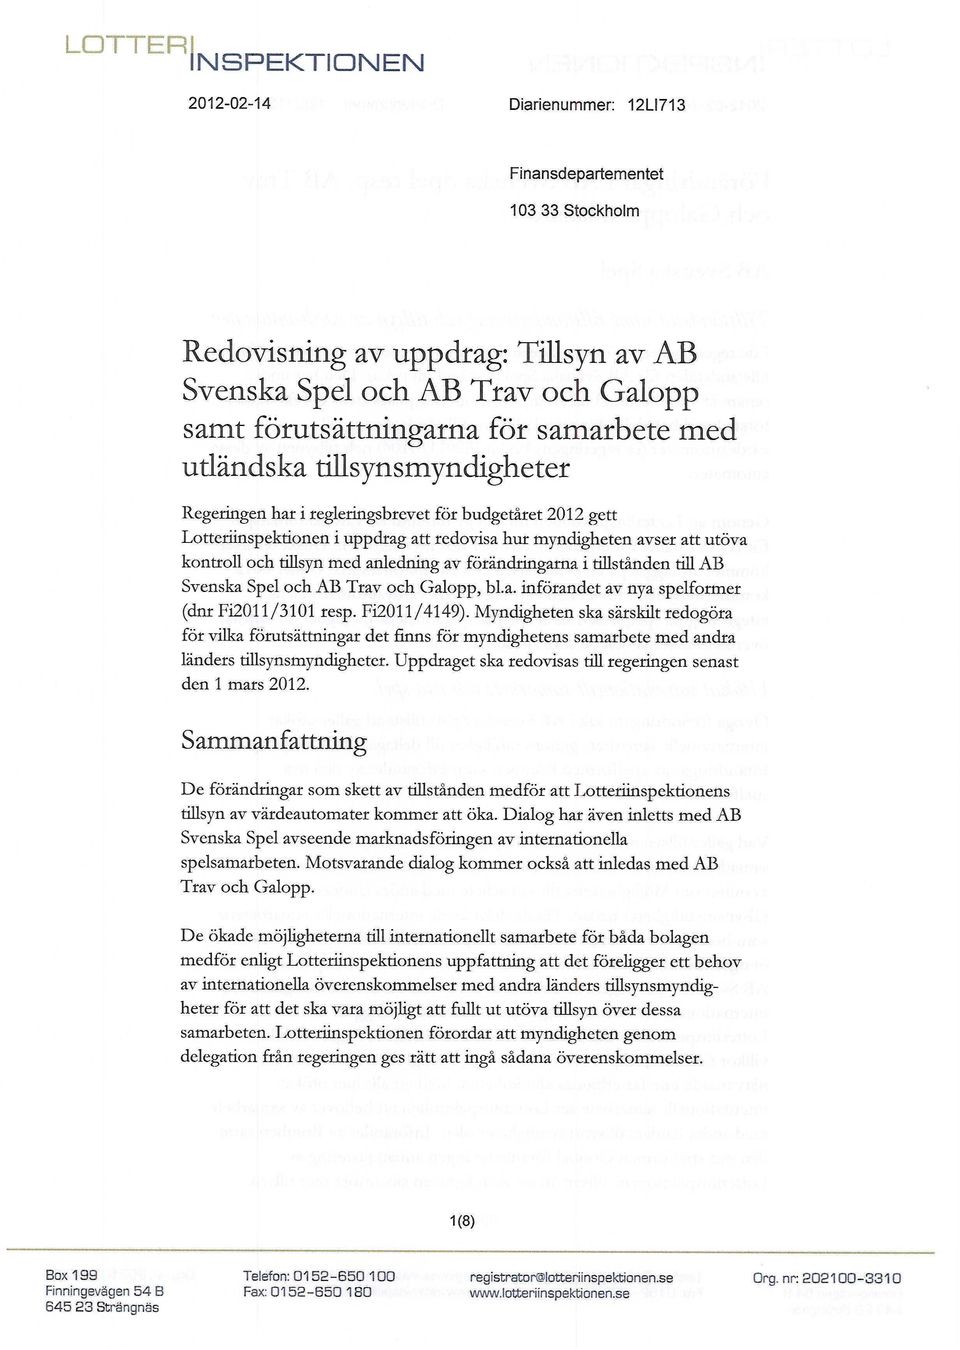 förändringarna i tillstånden till AB Svenska Spel och AB Trav och Galopp, bl.a. införandet av nya spelformer (dnr Fi2011/3101 resp. Fi2011/4149).